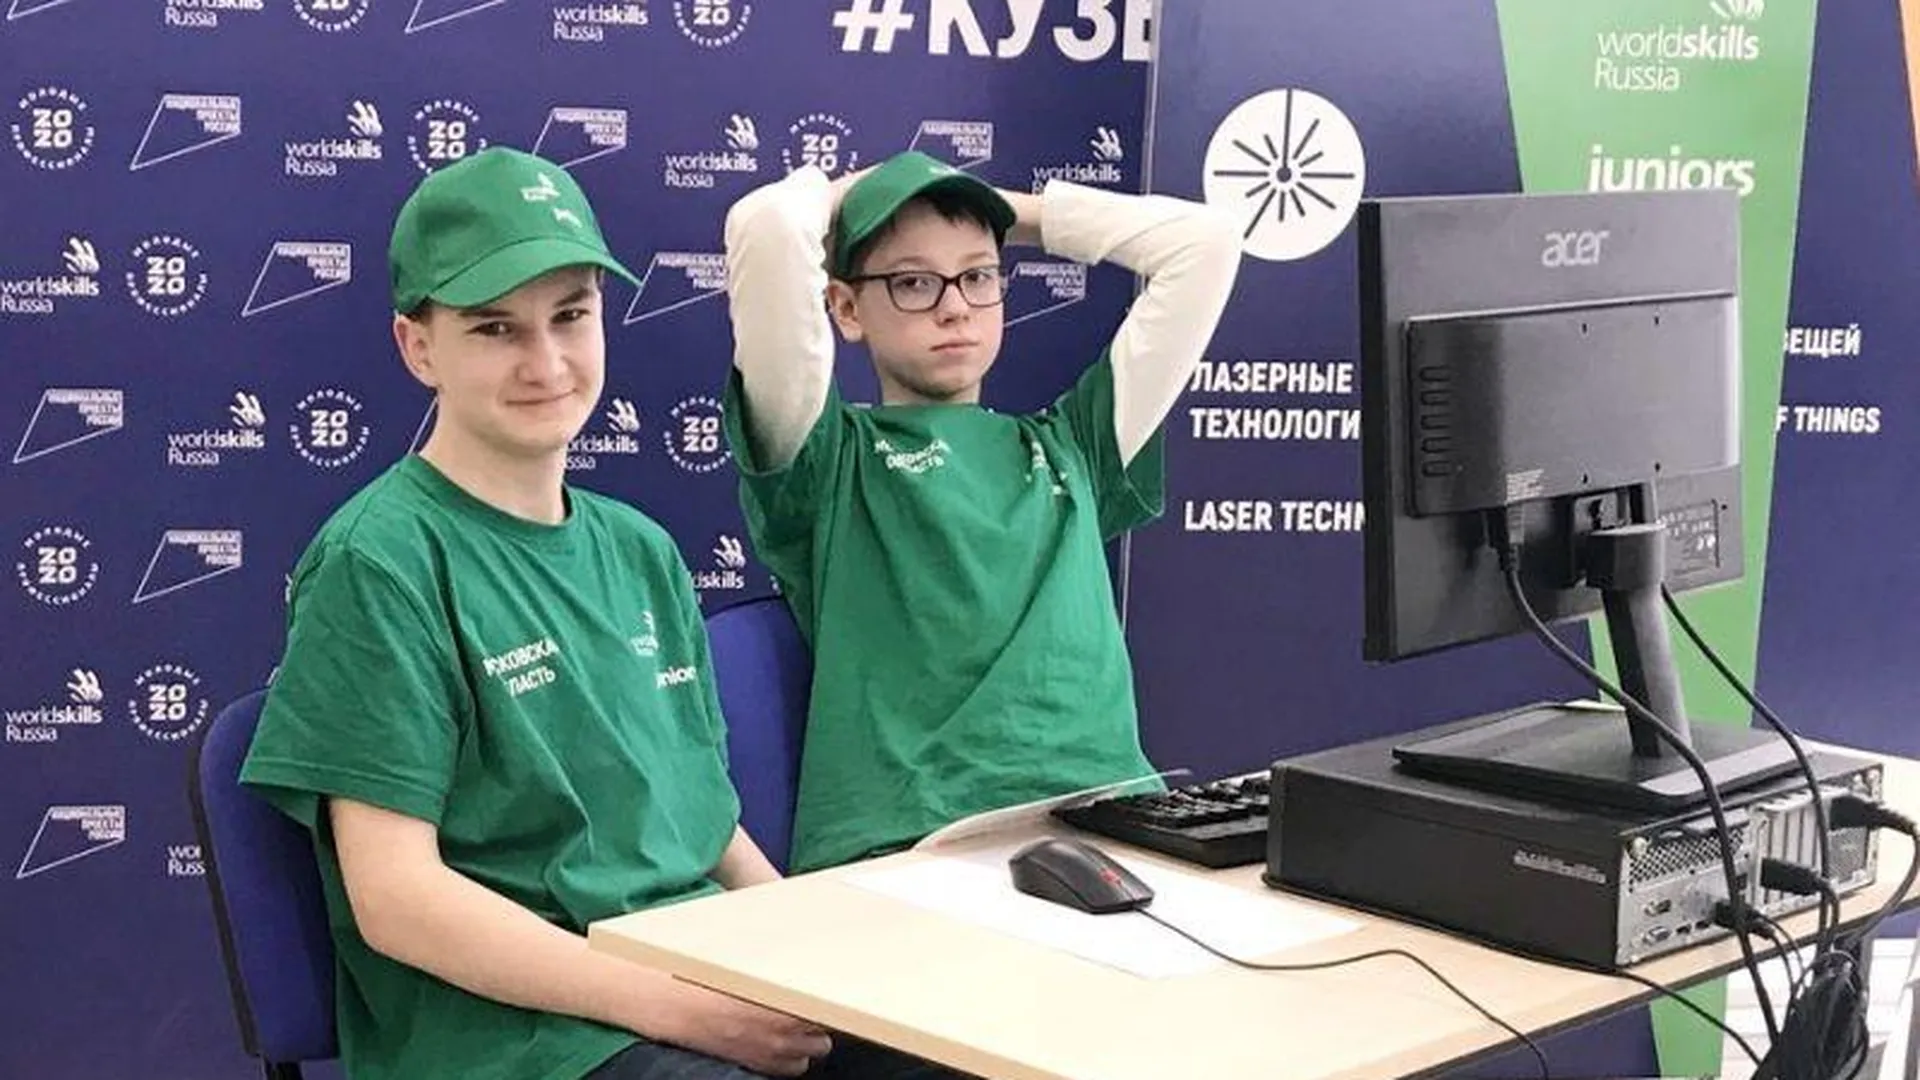 Отборочный этап WorldSkills Russia прошел в Реутове